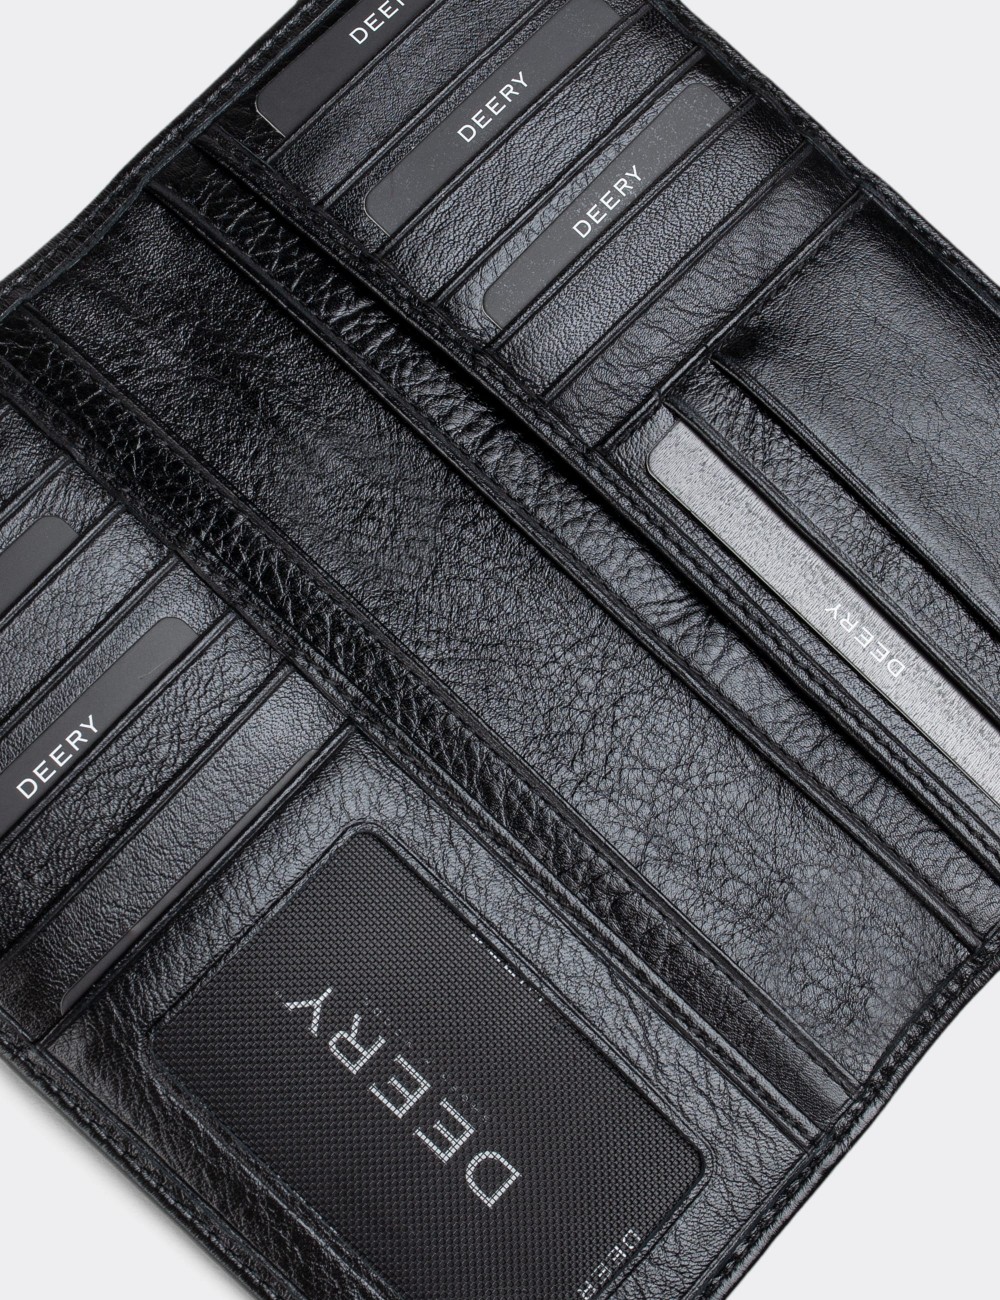  Leather Black Men's Wallet - 00802MSYHZ01